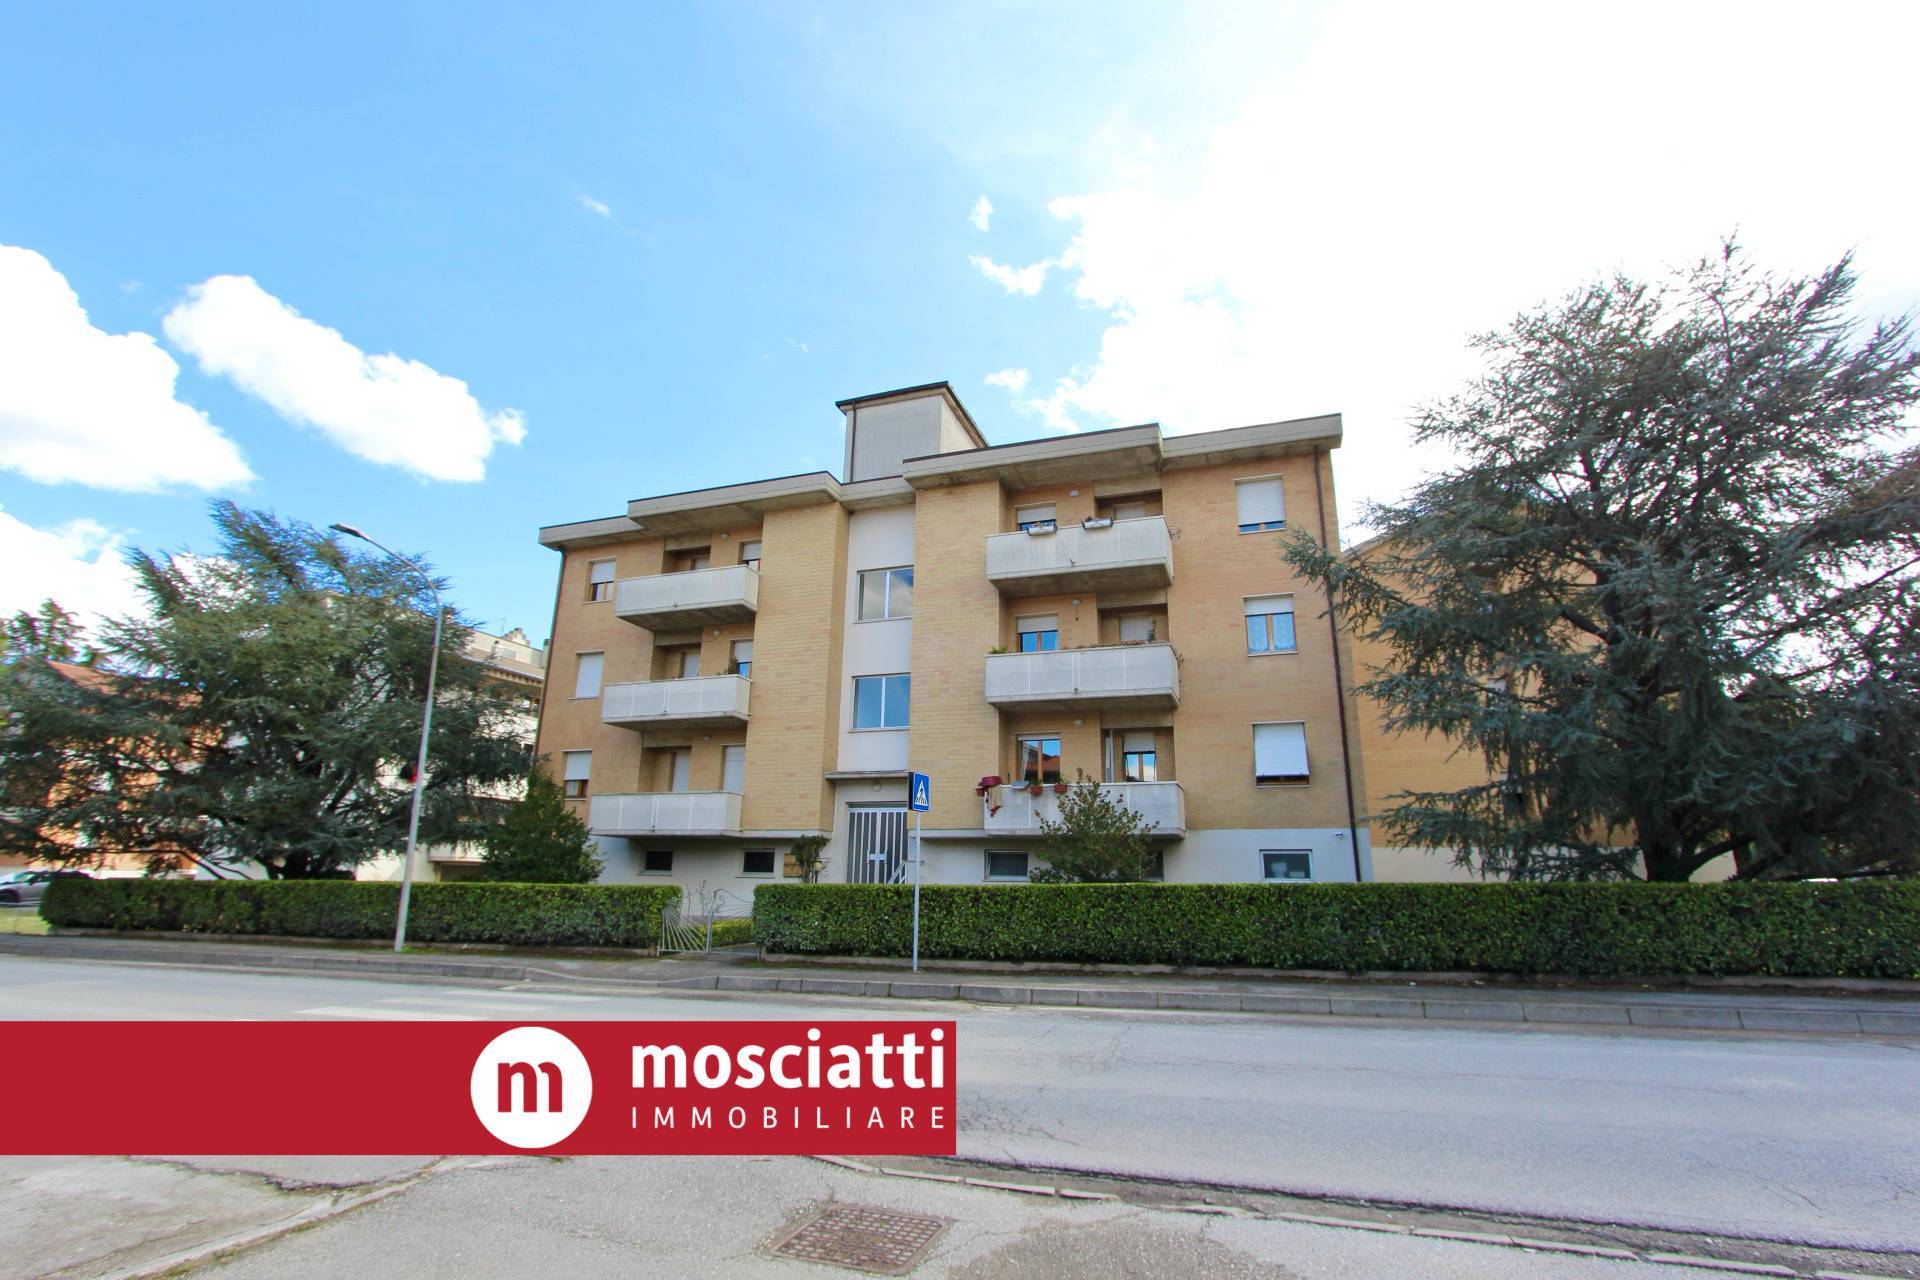 Appartamento in vendita a Matelica, 1 locali, prezzo € 125.000 | PortaleAgenzieImmobiliari.it